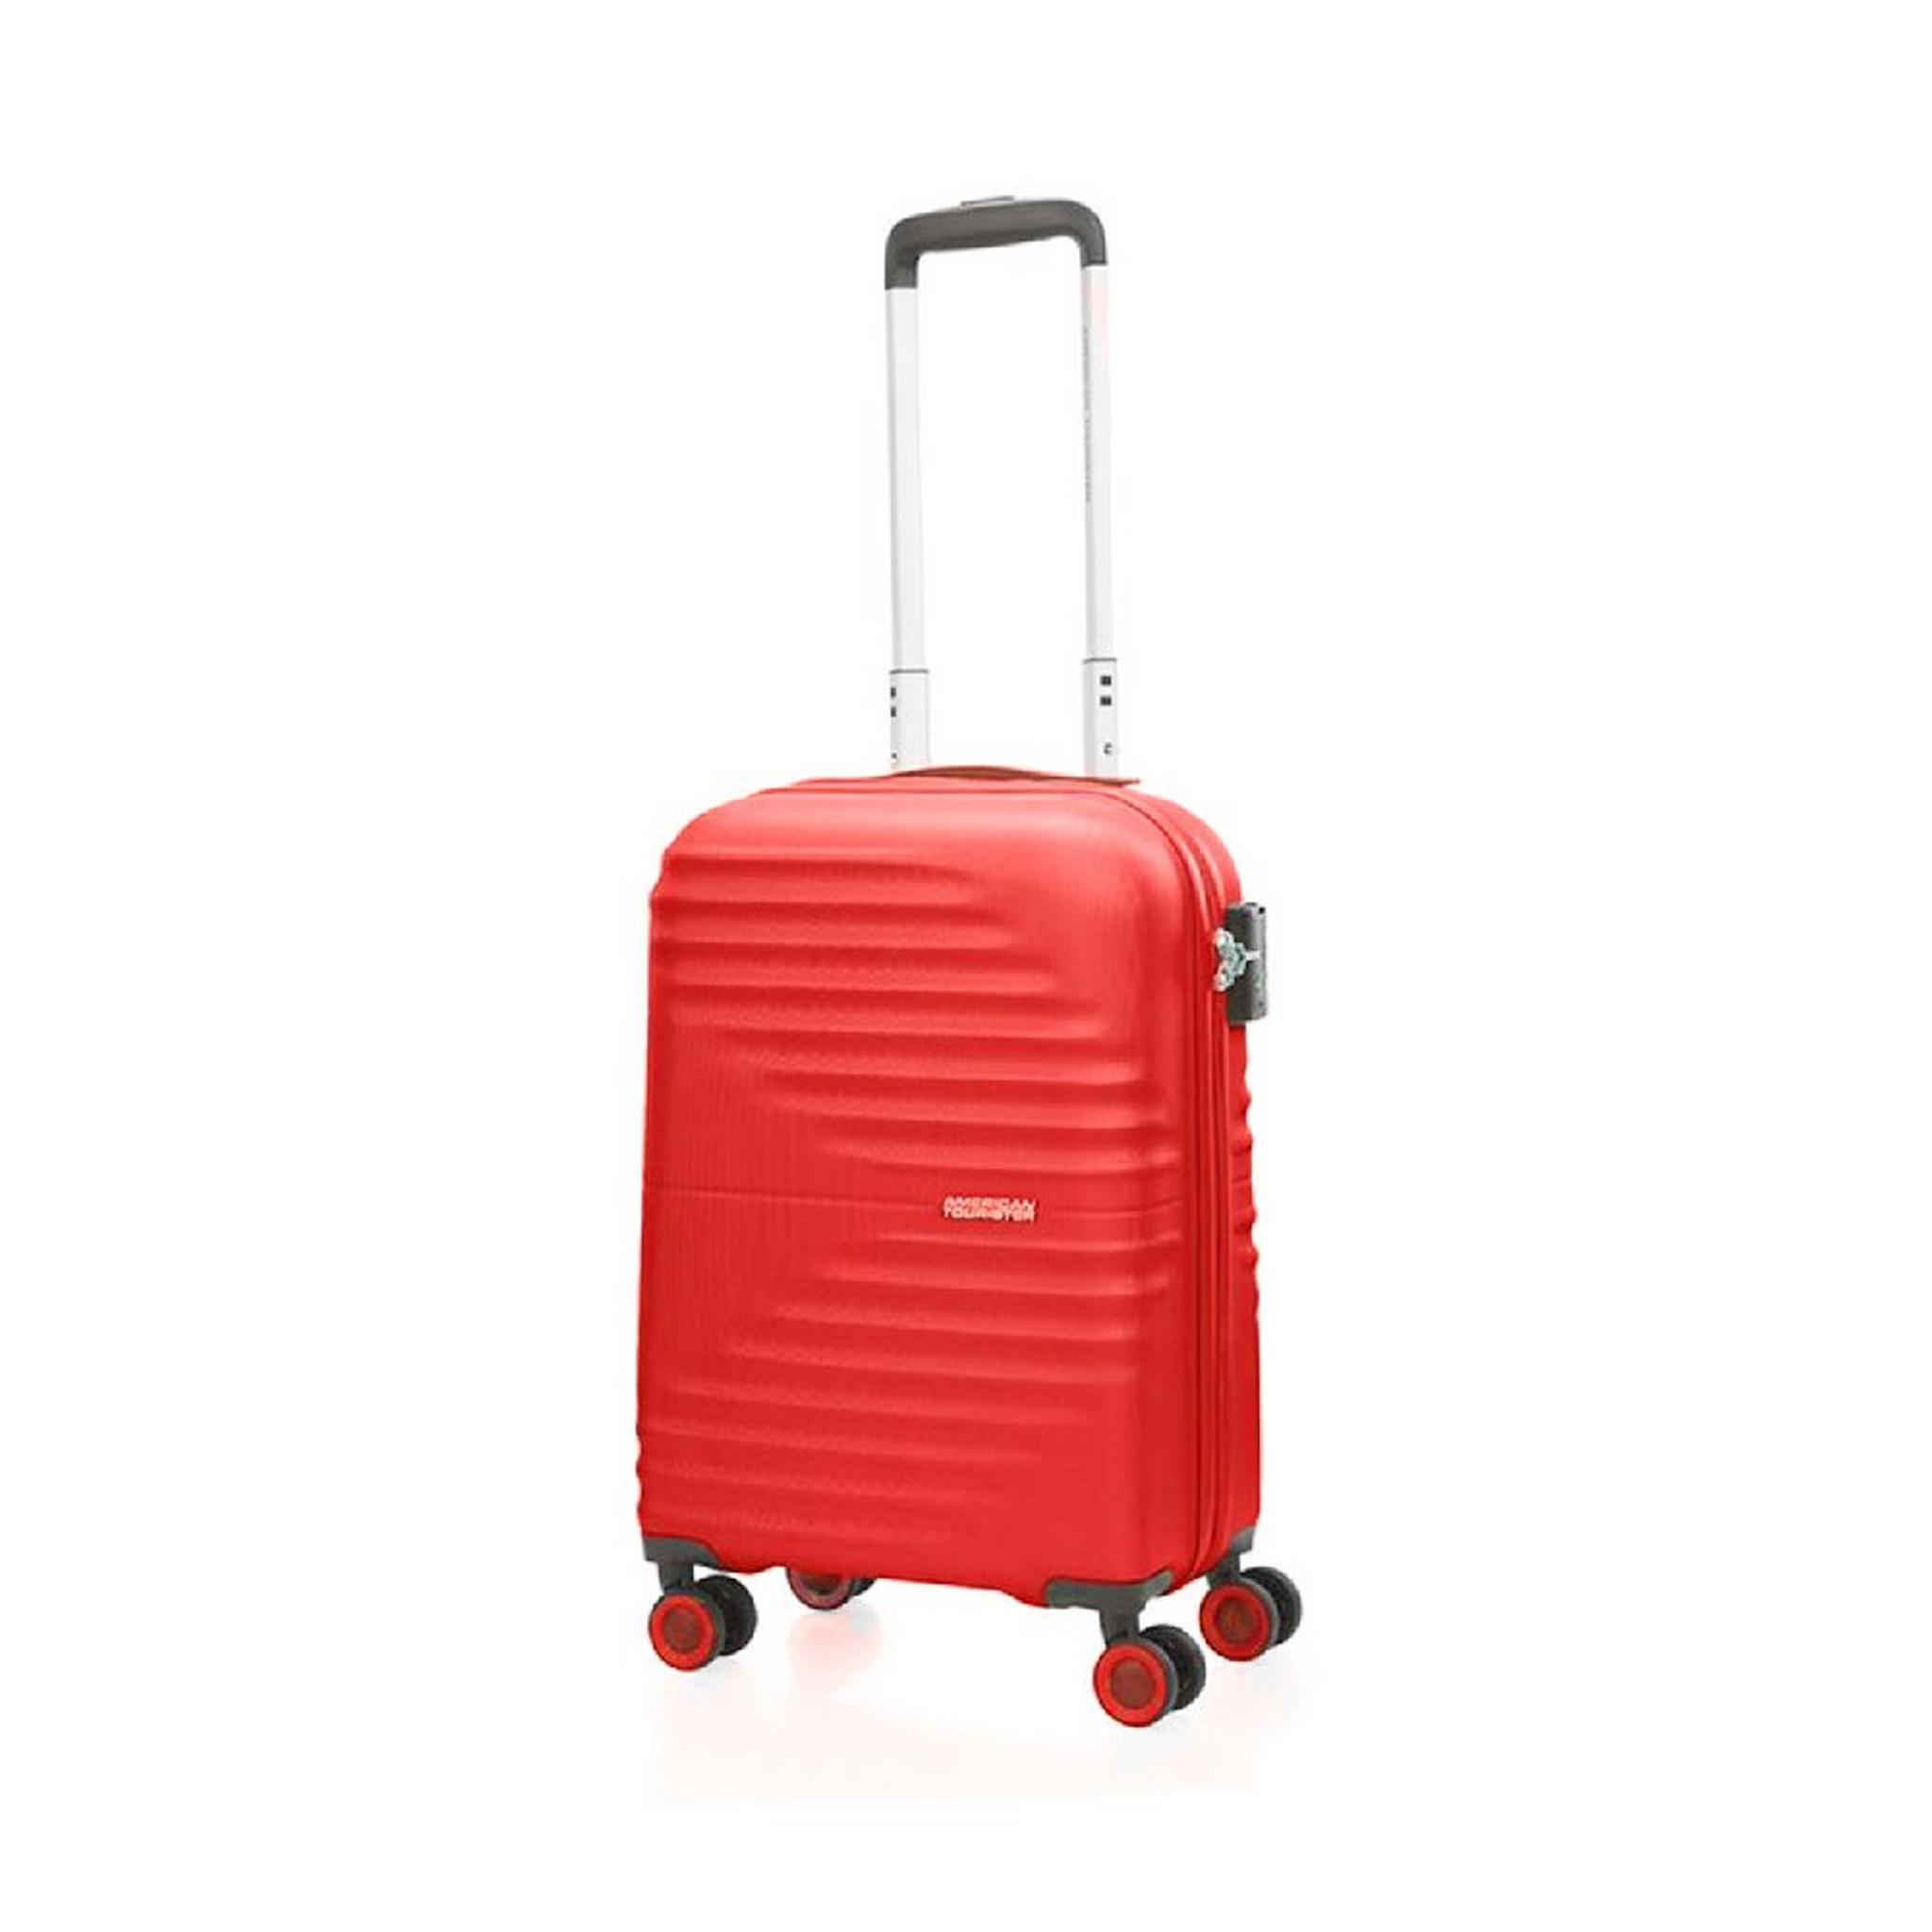 حقيبة سفر تويست ويفز بجوانب صلبة وعجلات دوارة  55سم، QC6X00006 - أحمر فيفيد